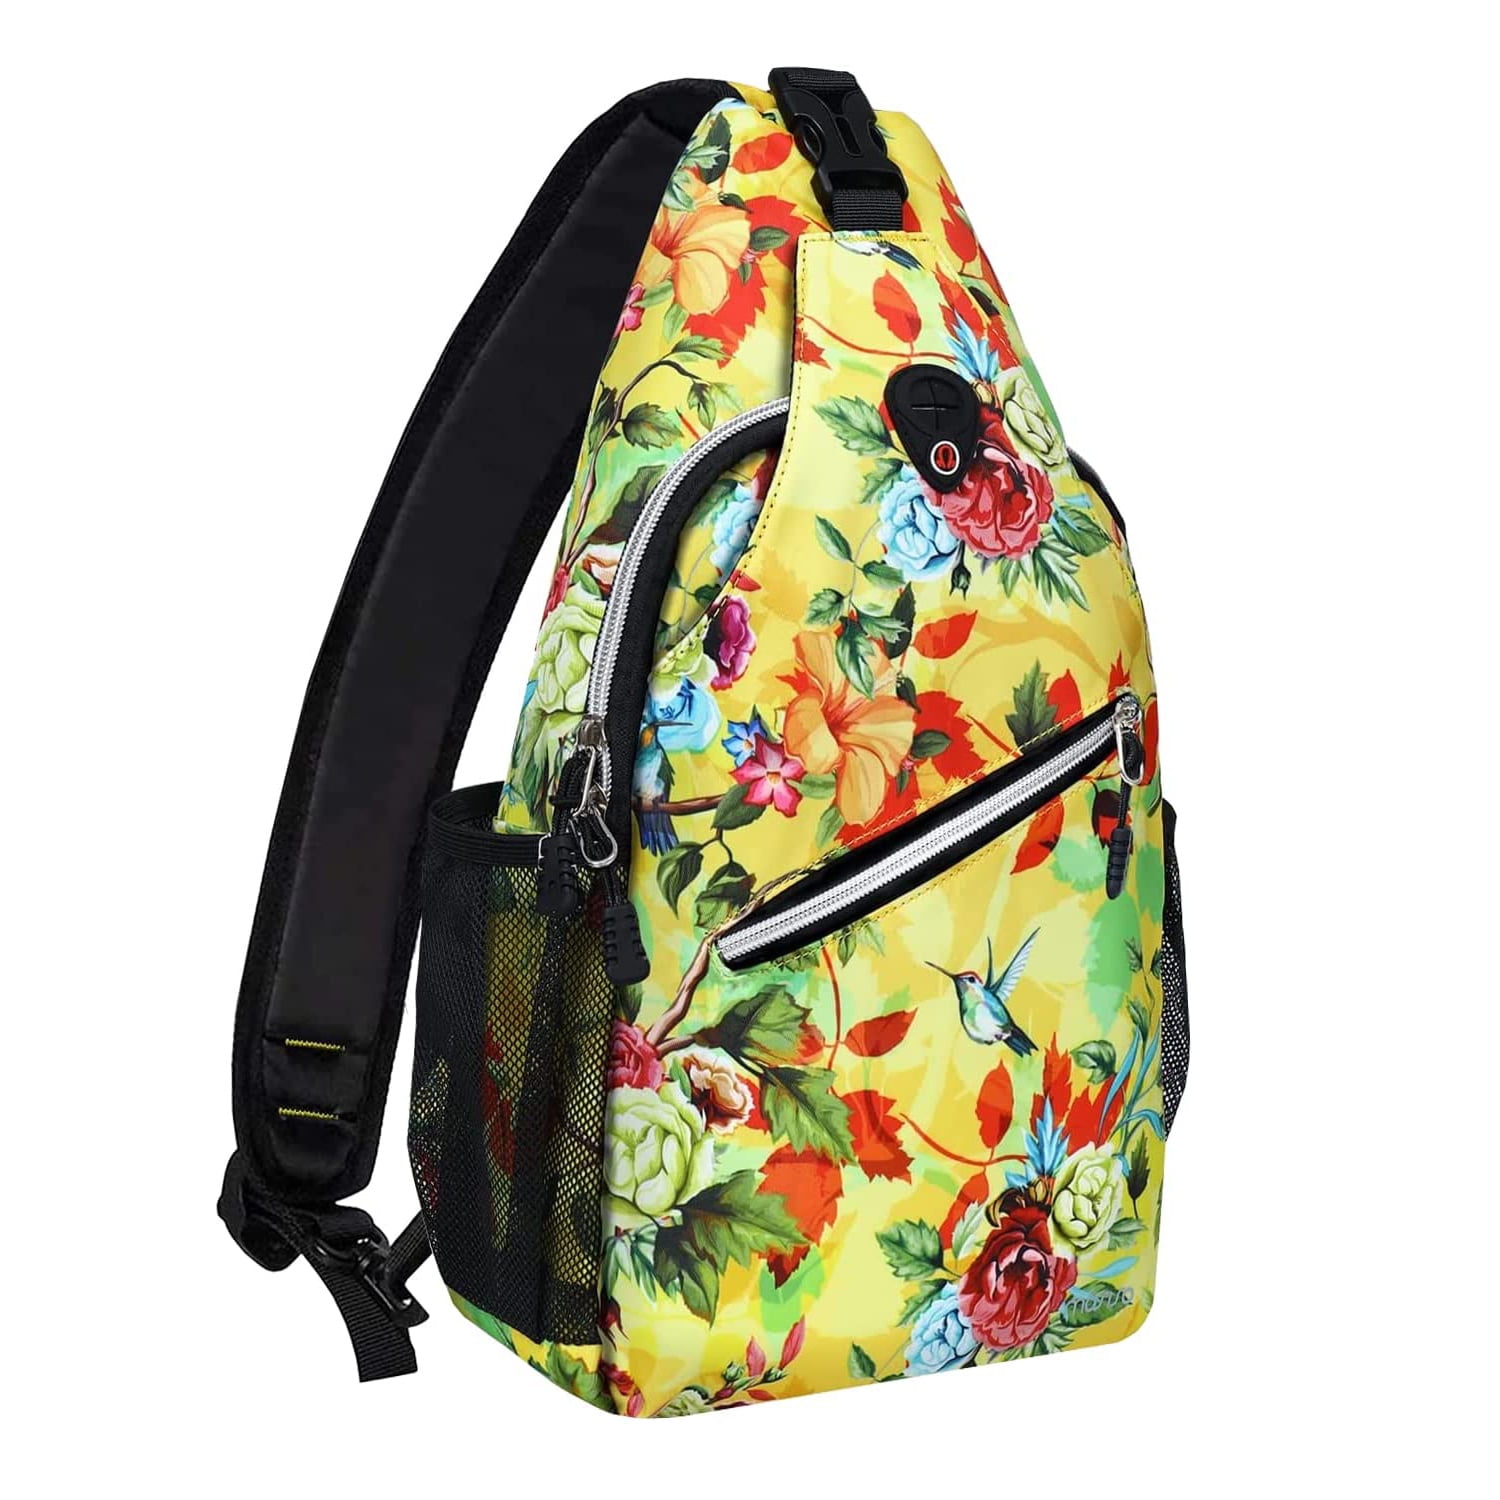 Mosiso Polyester Sling Bag Backpack Travel Hiking Outdoor Sport Crossbody  Shoulder Bag Multipurpose Daypack for Women Men, Navy Blue Base Floral 